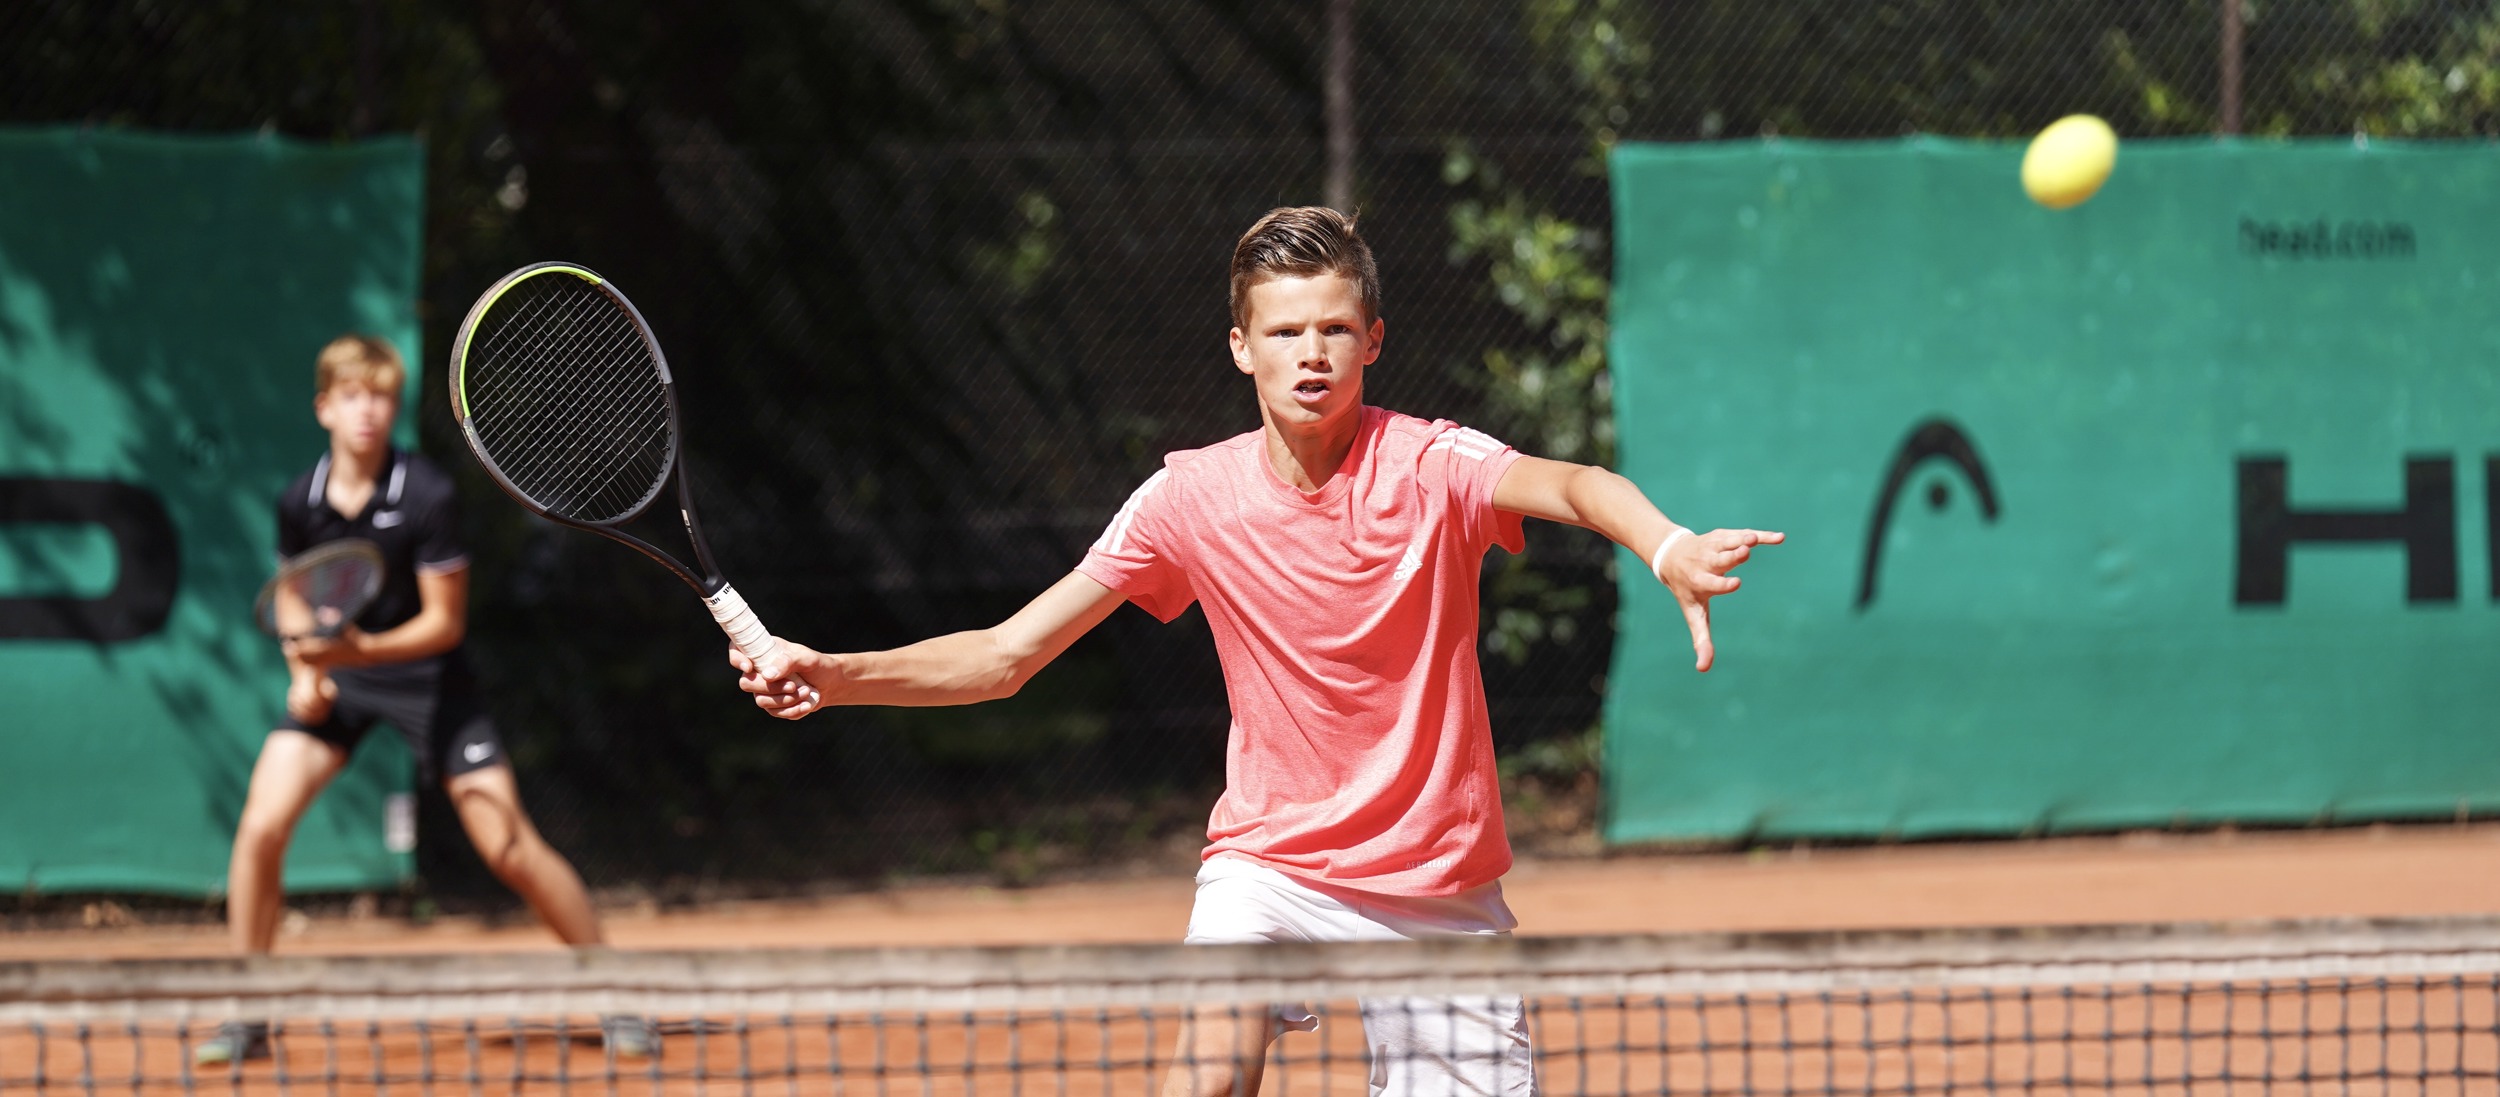 Bukken Ontleden Okkernoot Proeven van het landentennis in Tennis Europe Summer Cups | Tennis